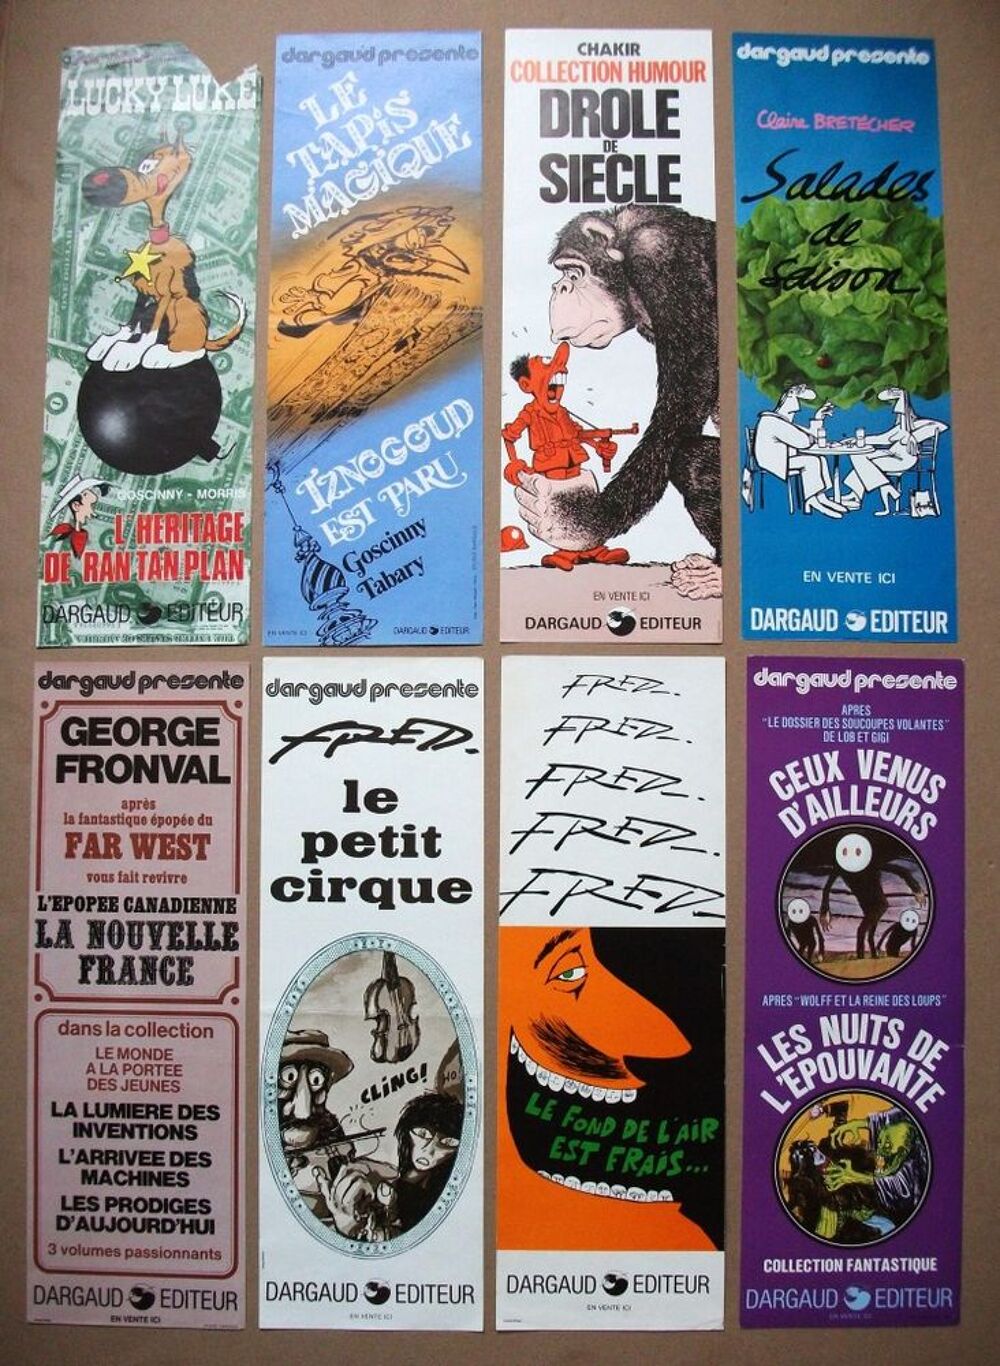 LOT de 8 Affiches publicitaires Dargaud de 1973 